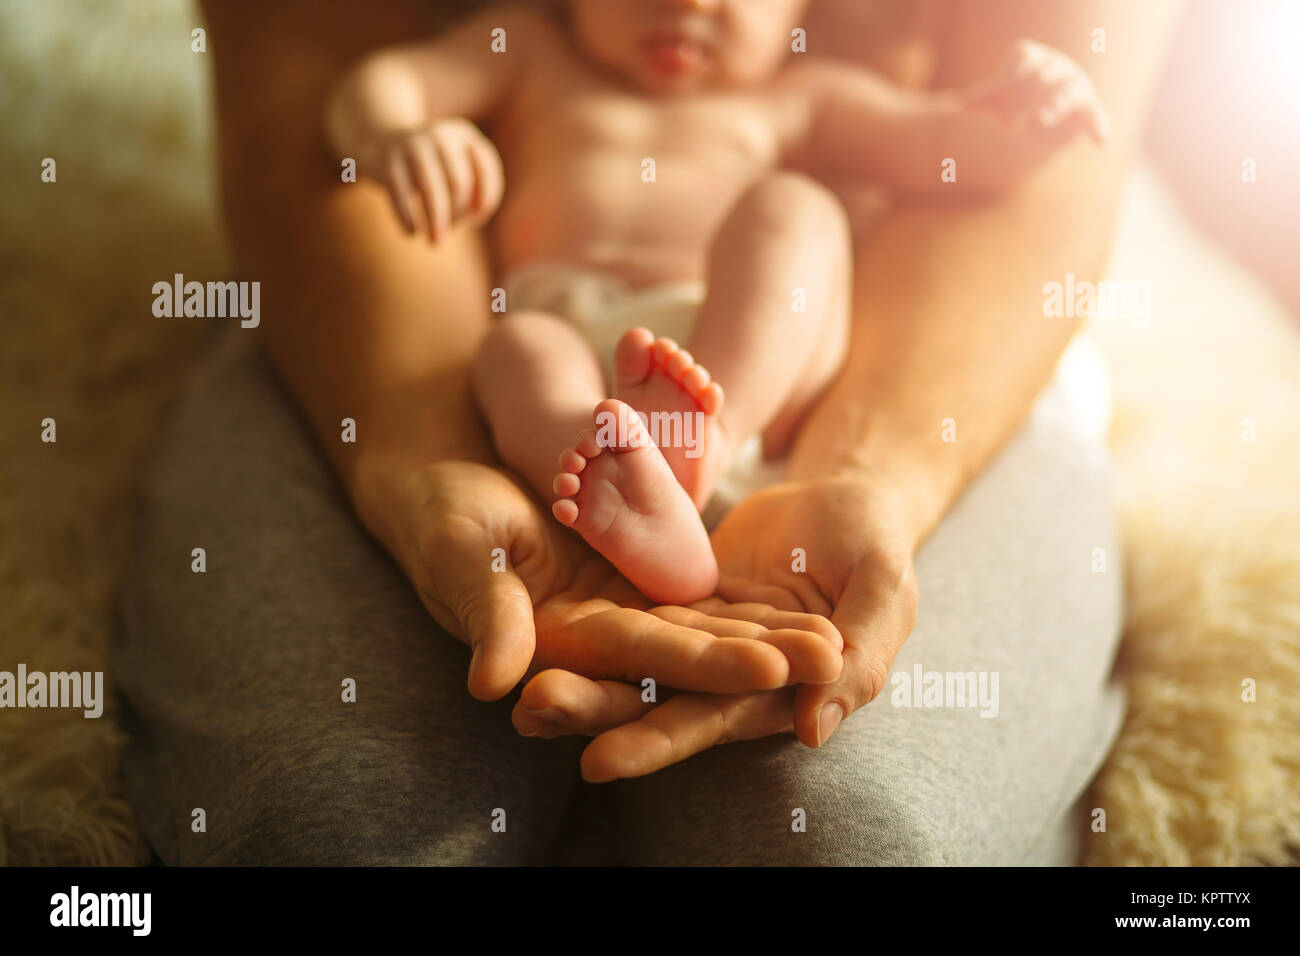 La madre del bebé recién nacido tiene feets. Pies diminutos en mano de mujer. Foto de stock